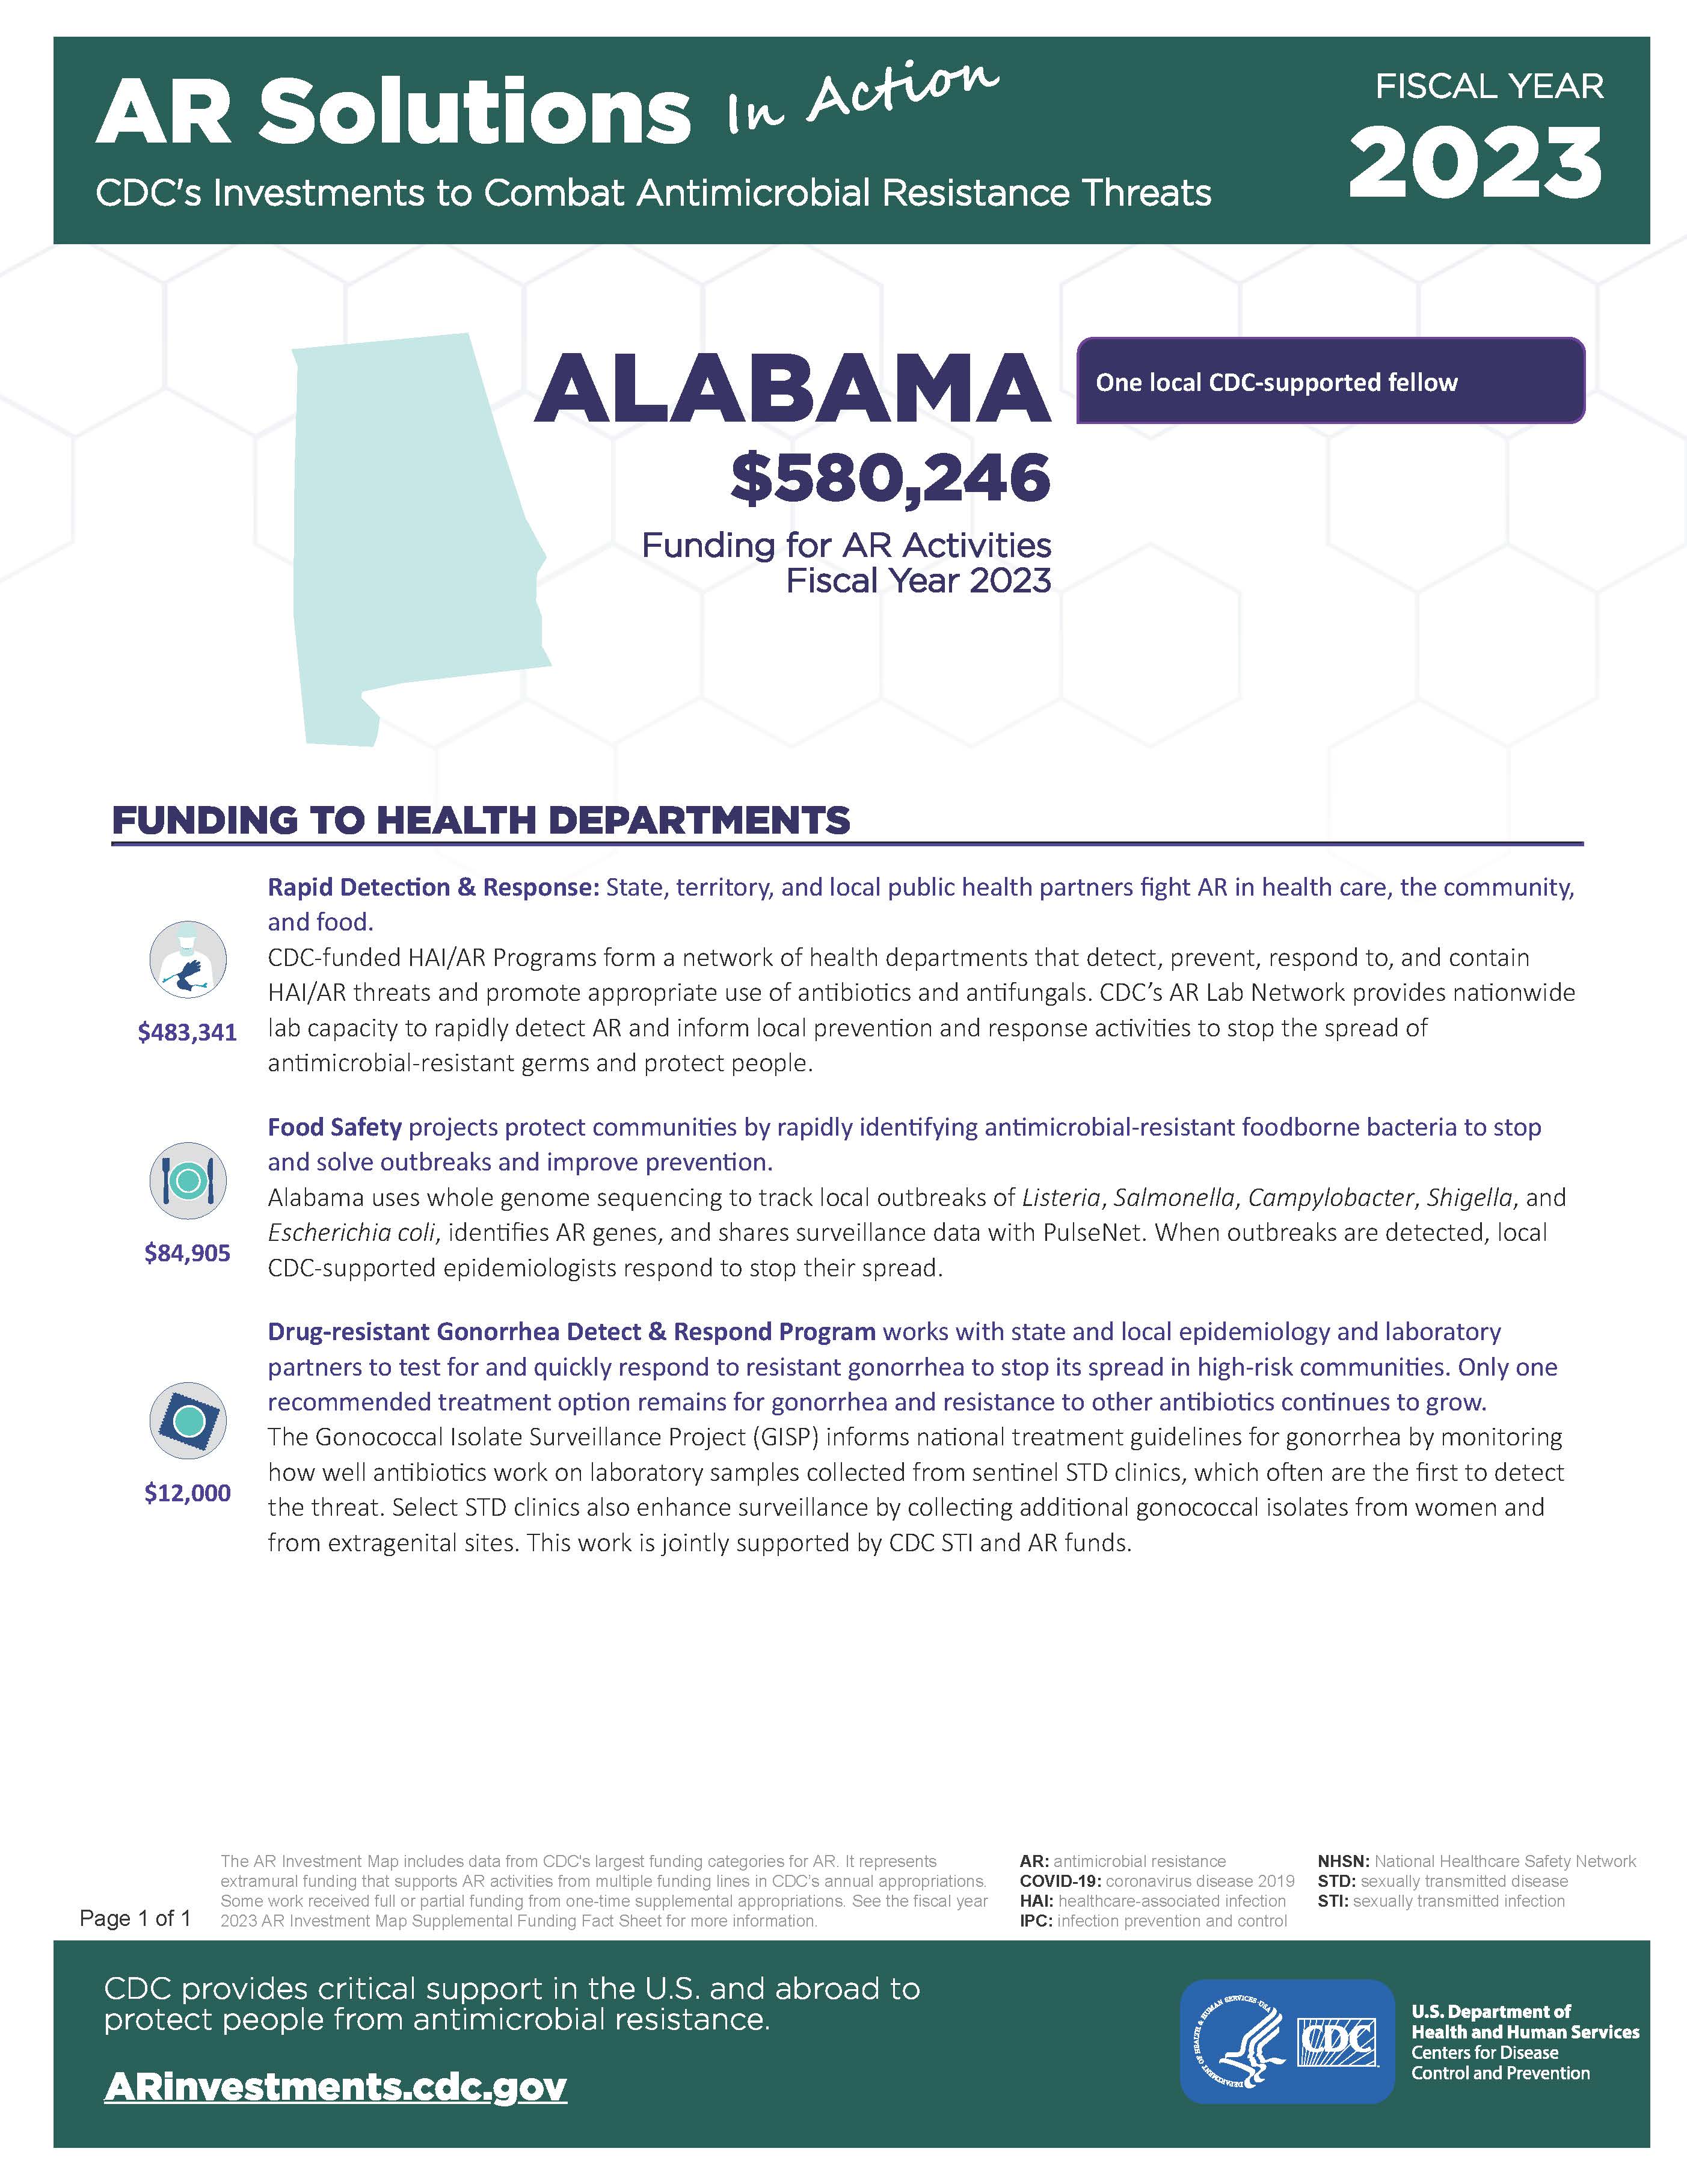 View Factsheet for Alabama